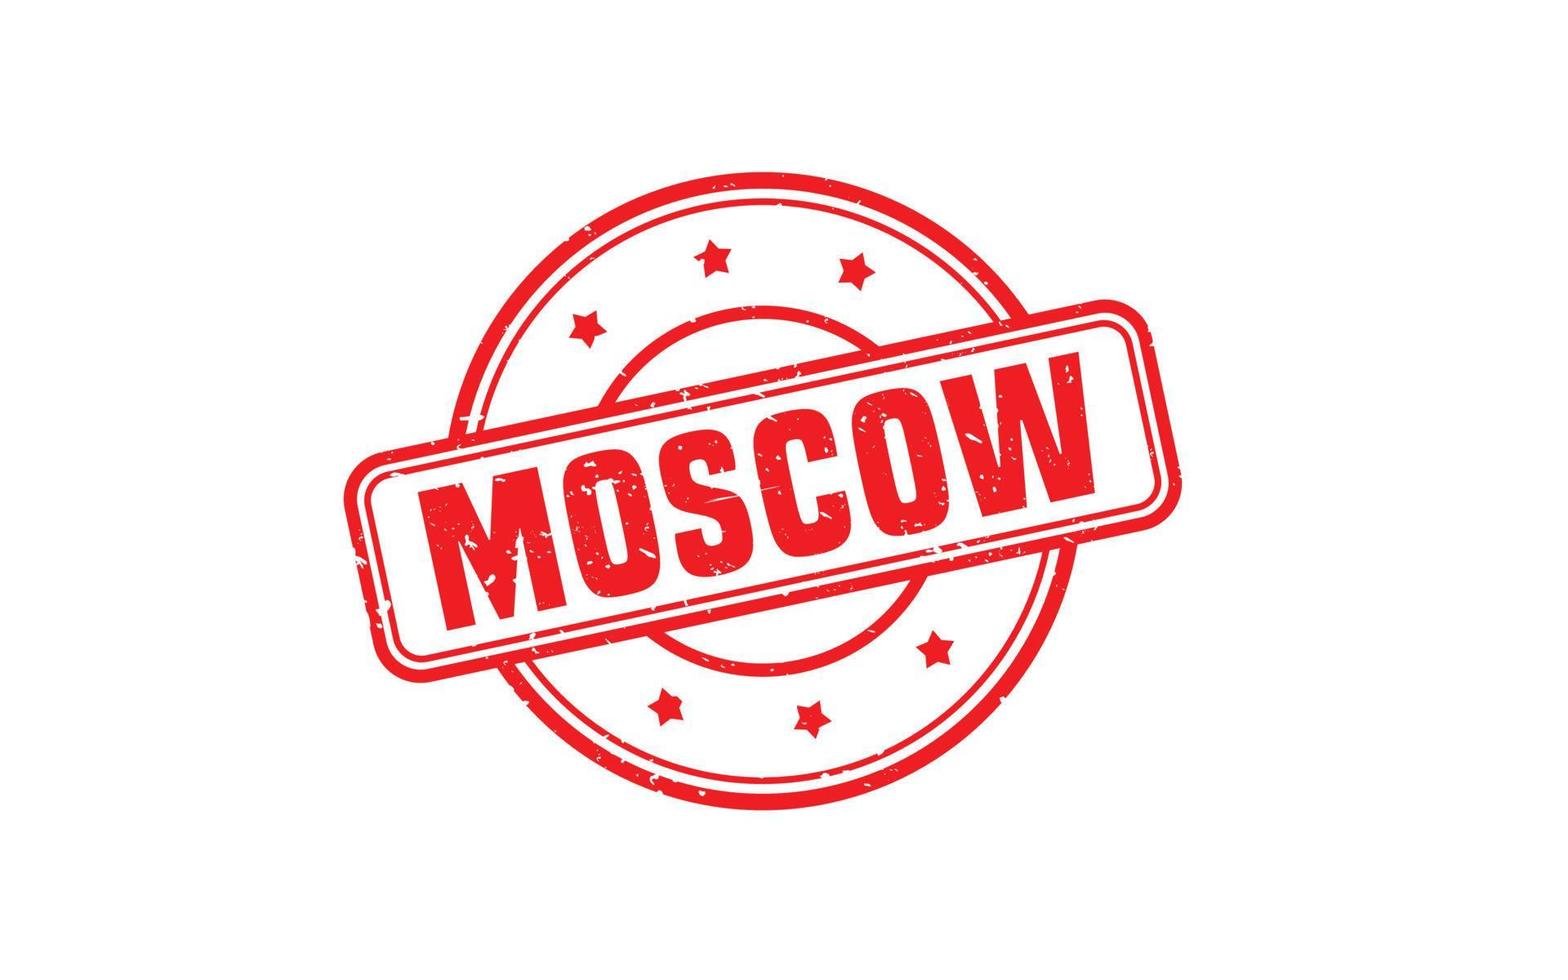 textura de sello de goma de Moscú Rusia con estilo grunge sobre fondo blanco vector